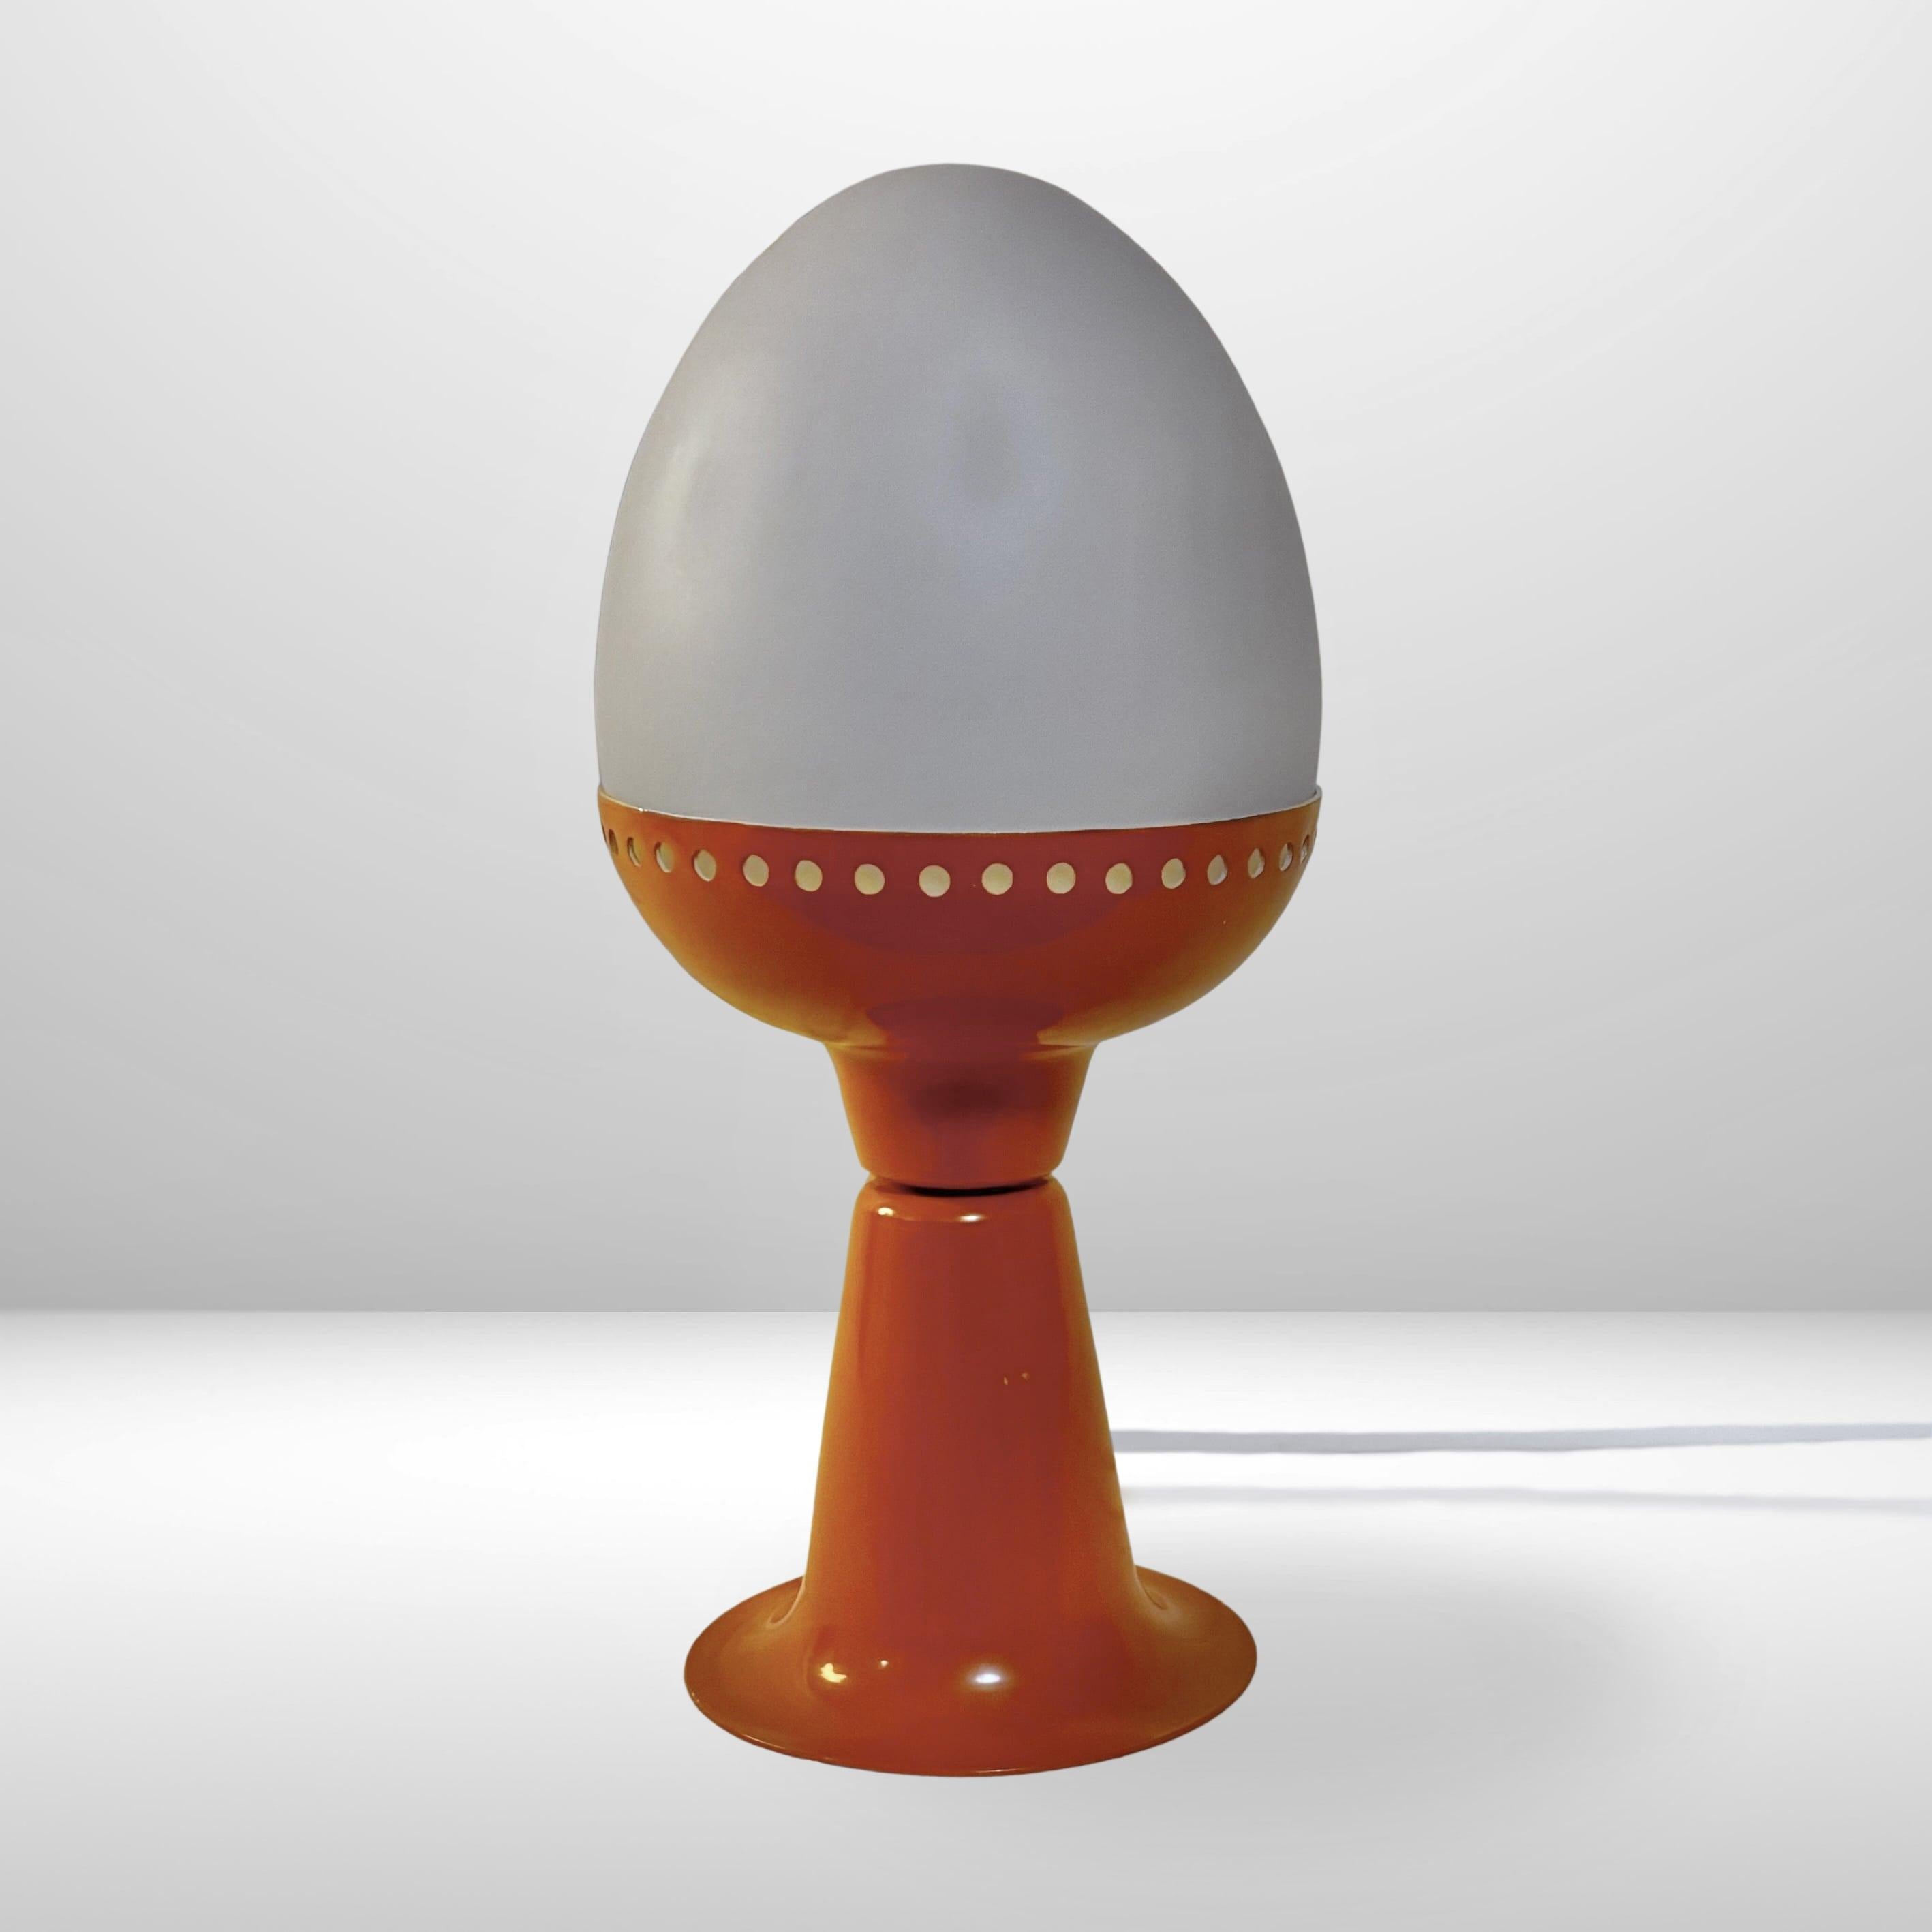 Pequeña lámpara de mesa futurista, modelo B225, diseñada y fabricada por Hans-Agne Jakobsson en la década de 1960. Presenta una base de aluminio naranja que sostiene una pantalla de cristal opalino en forma de huevo. El pie de tulipán y el metal